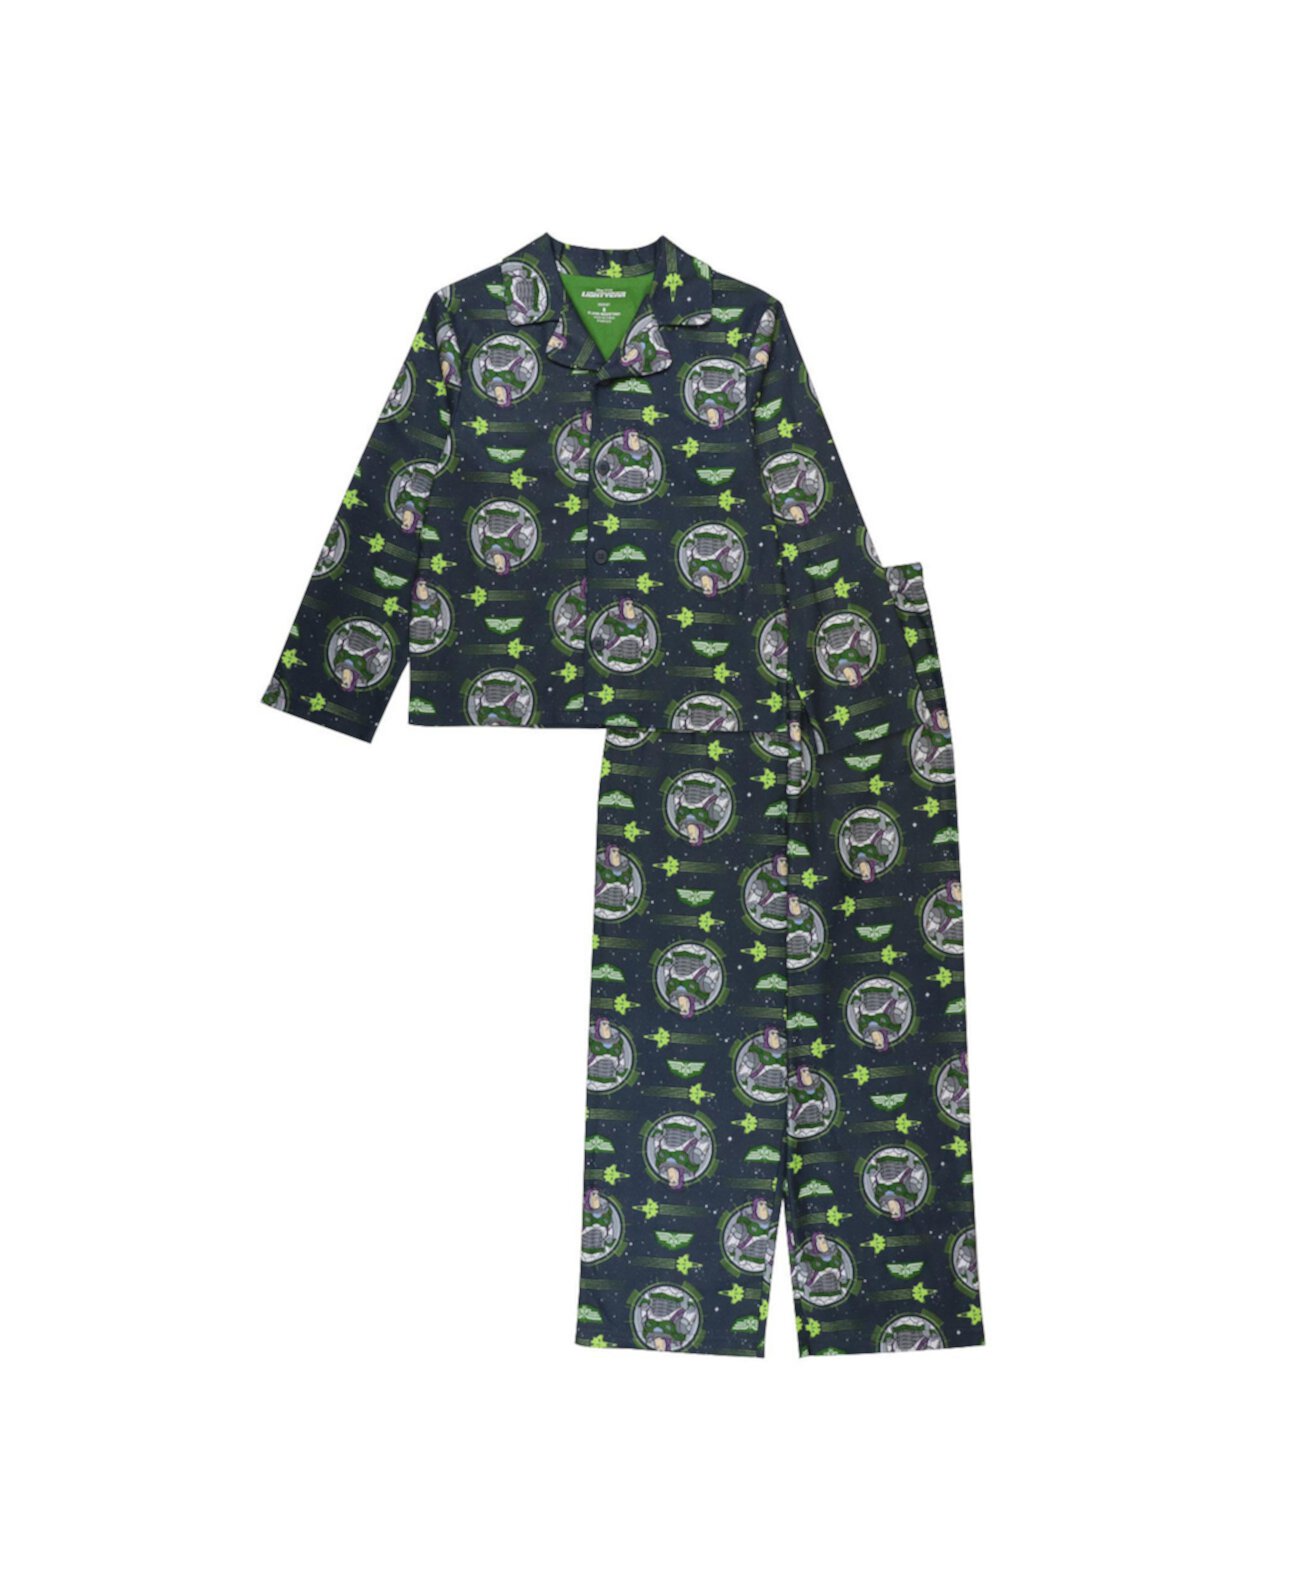 Топ и пижама Big Boys Lightyear, комплект из 2 предметов Toy Story